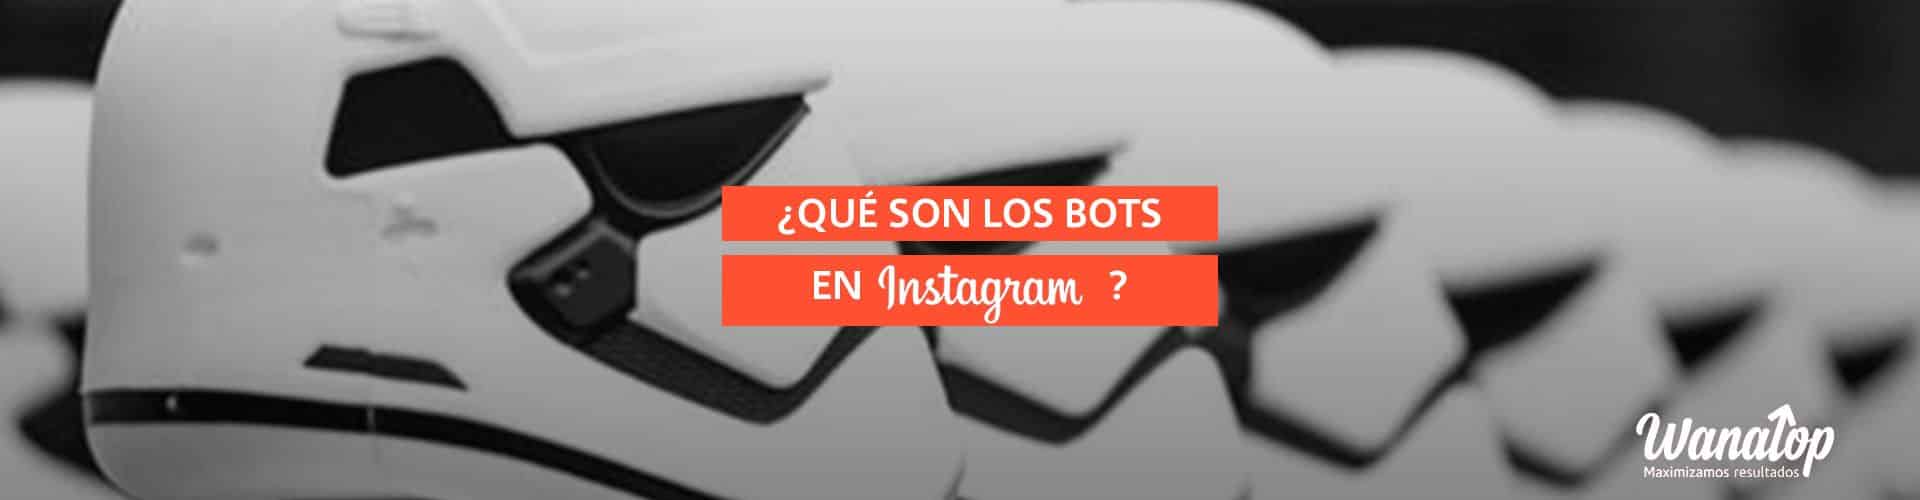 ¿Qué son los Bots de Instagram?